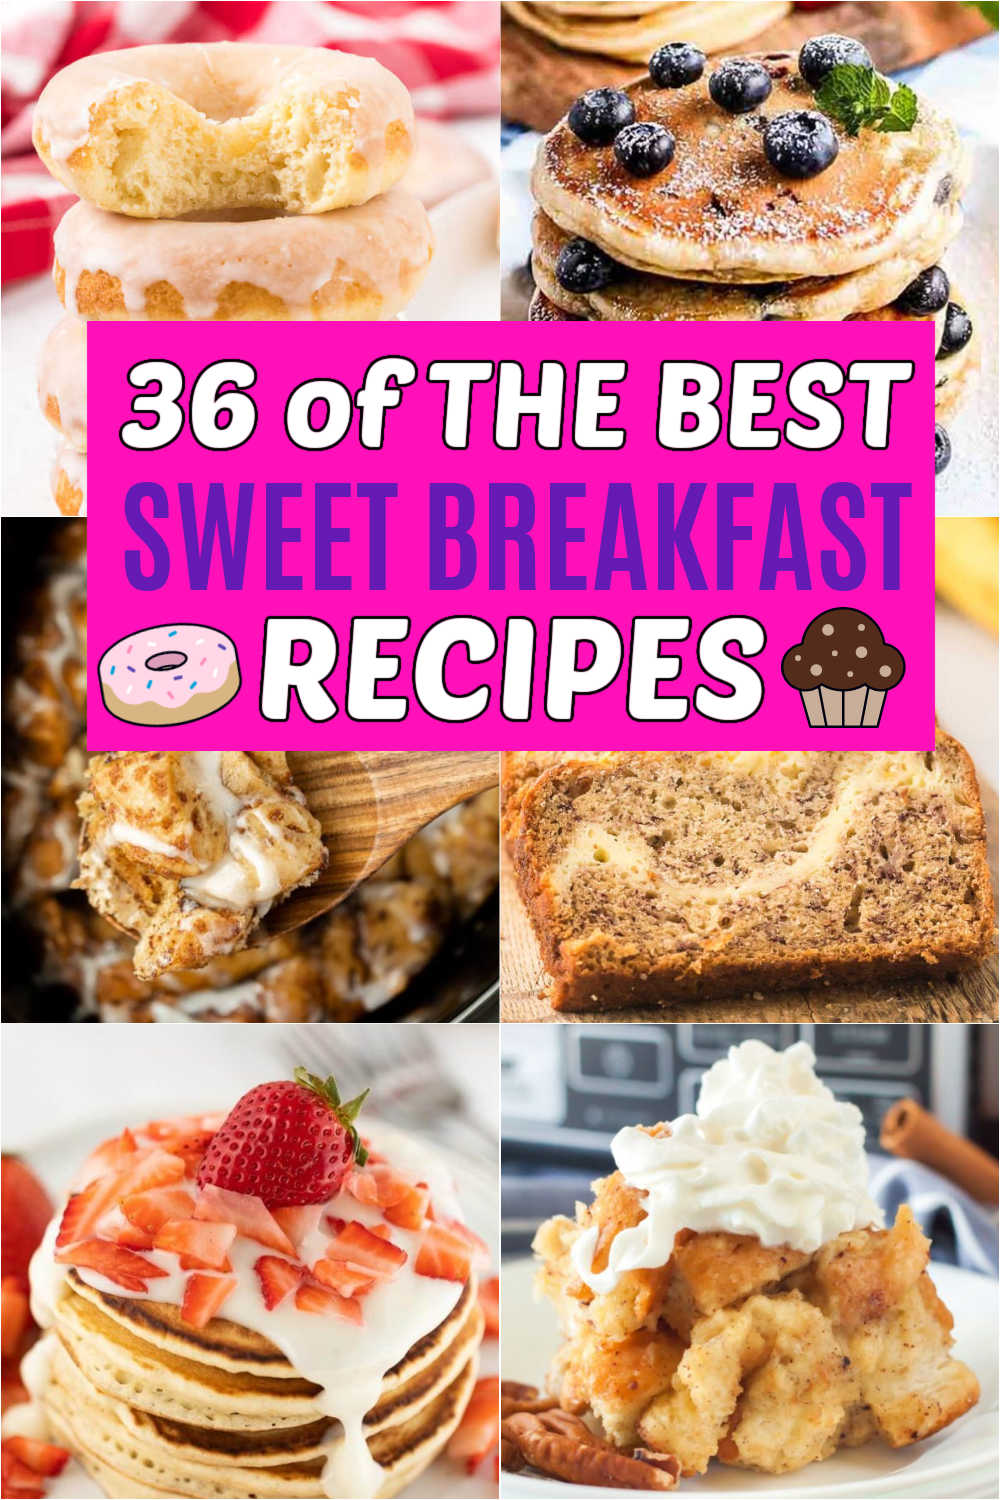 https://www.eatingonadime.com/wp-content/uploads/2022/07/Sweet-Breakfast-Recipes-Pin-1-1.jpg